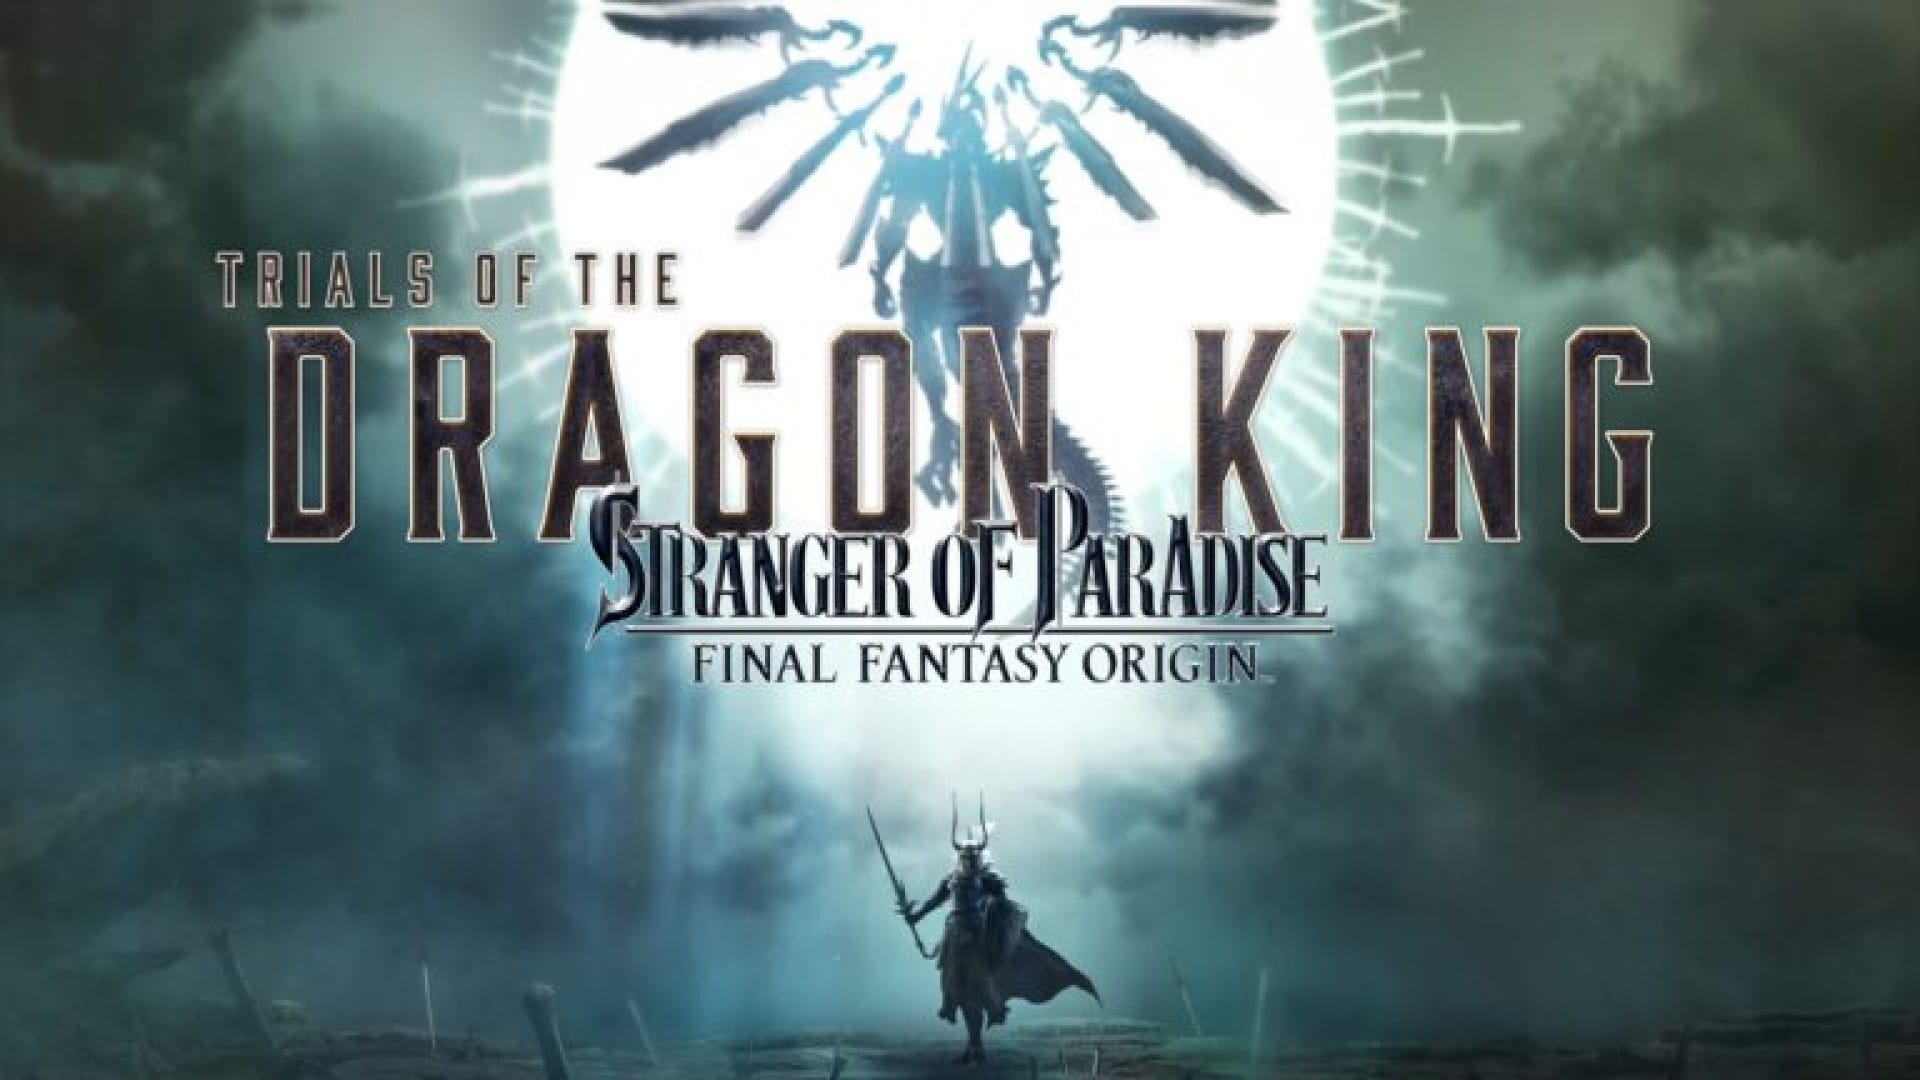 stranger-of-paradise-final-fantasy-origin-trials-of-the-dragon-king-dlc-se-lanzar-el-20-de-julio